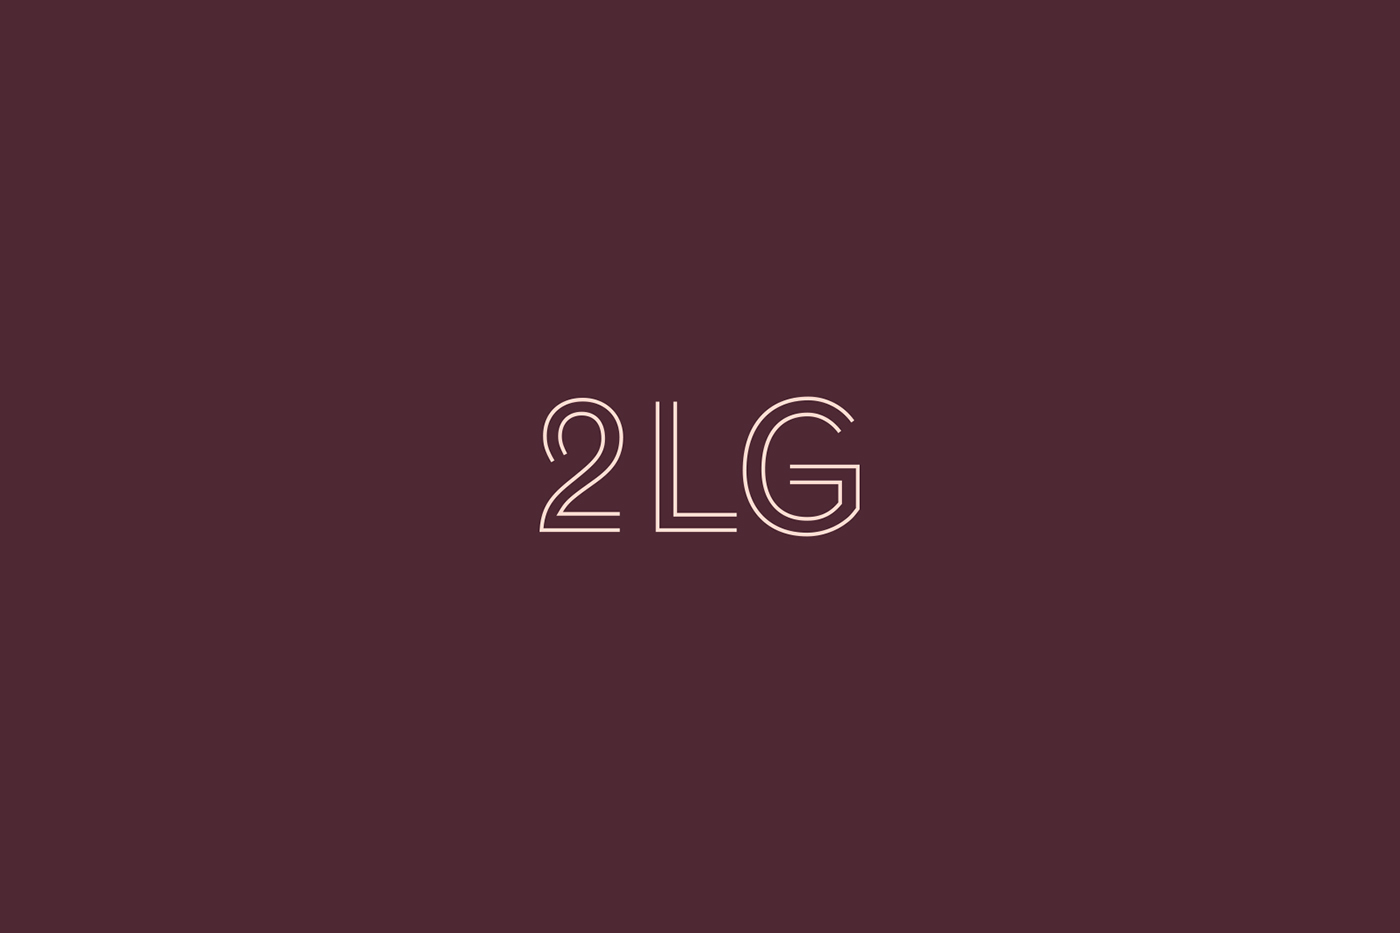 Logo designed by Two Times Elliott for London-based interior design studio 2LG